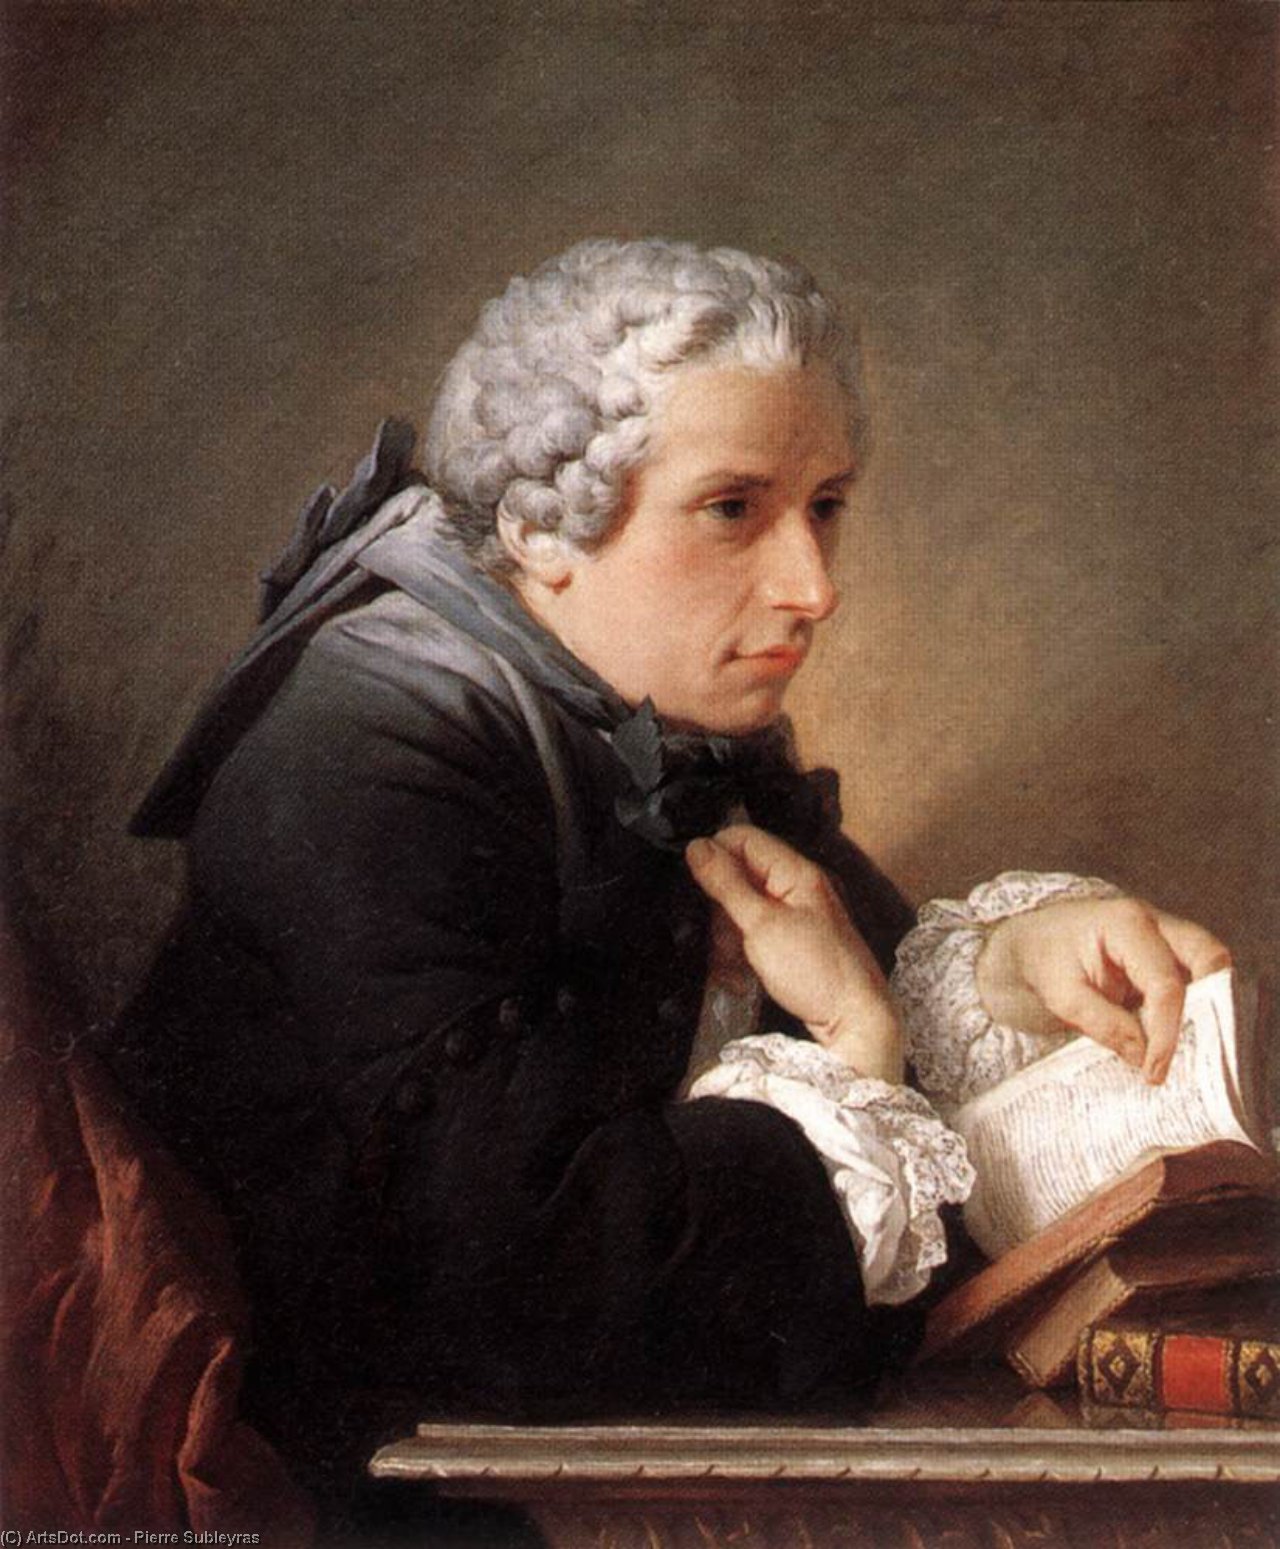 WikiOO.org - Εγκυκλοπαίδεια Καλών Τεχνών - Ζωγραφική, έργα τέχνης Pierre Subleyras - Portrait of a Man